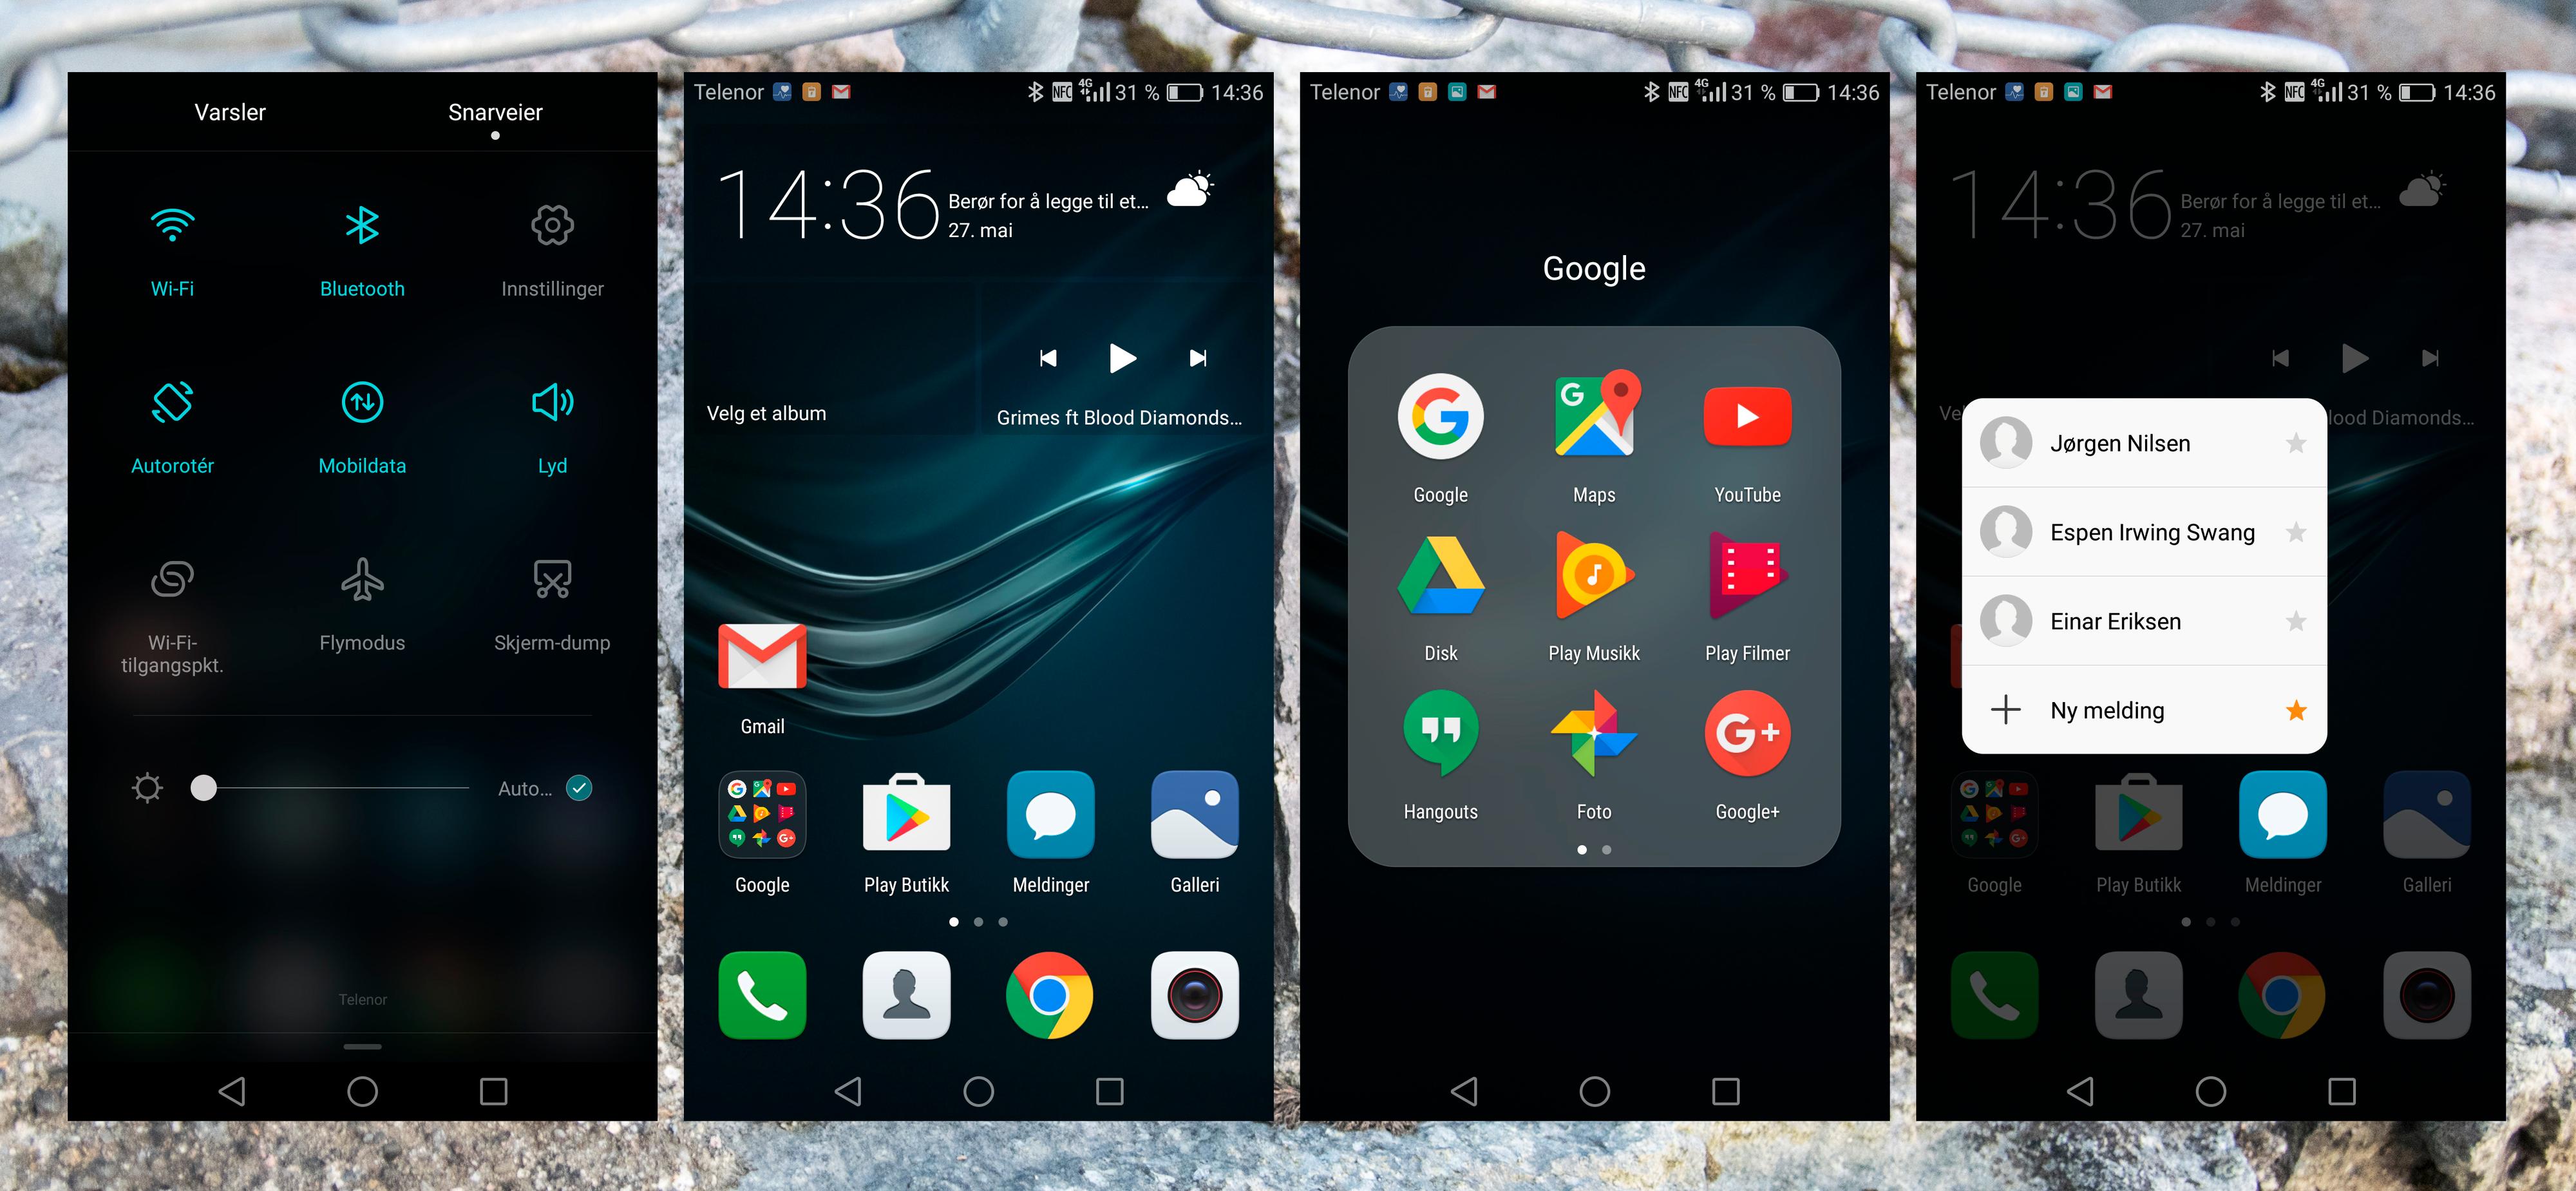 Menysystemet i Huawei P9 Plus er det produsenten selv som har laget. Det ligger oppå Android, og er fullt av nyttig funksjonalitet. En særegenhet her er at telefonen kan måle trykket du legger i berøringer, slik at enkelte funksjoner kan betjenes ekstra raskt. For eksempel oppretting av tekstmeldinger.